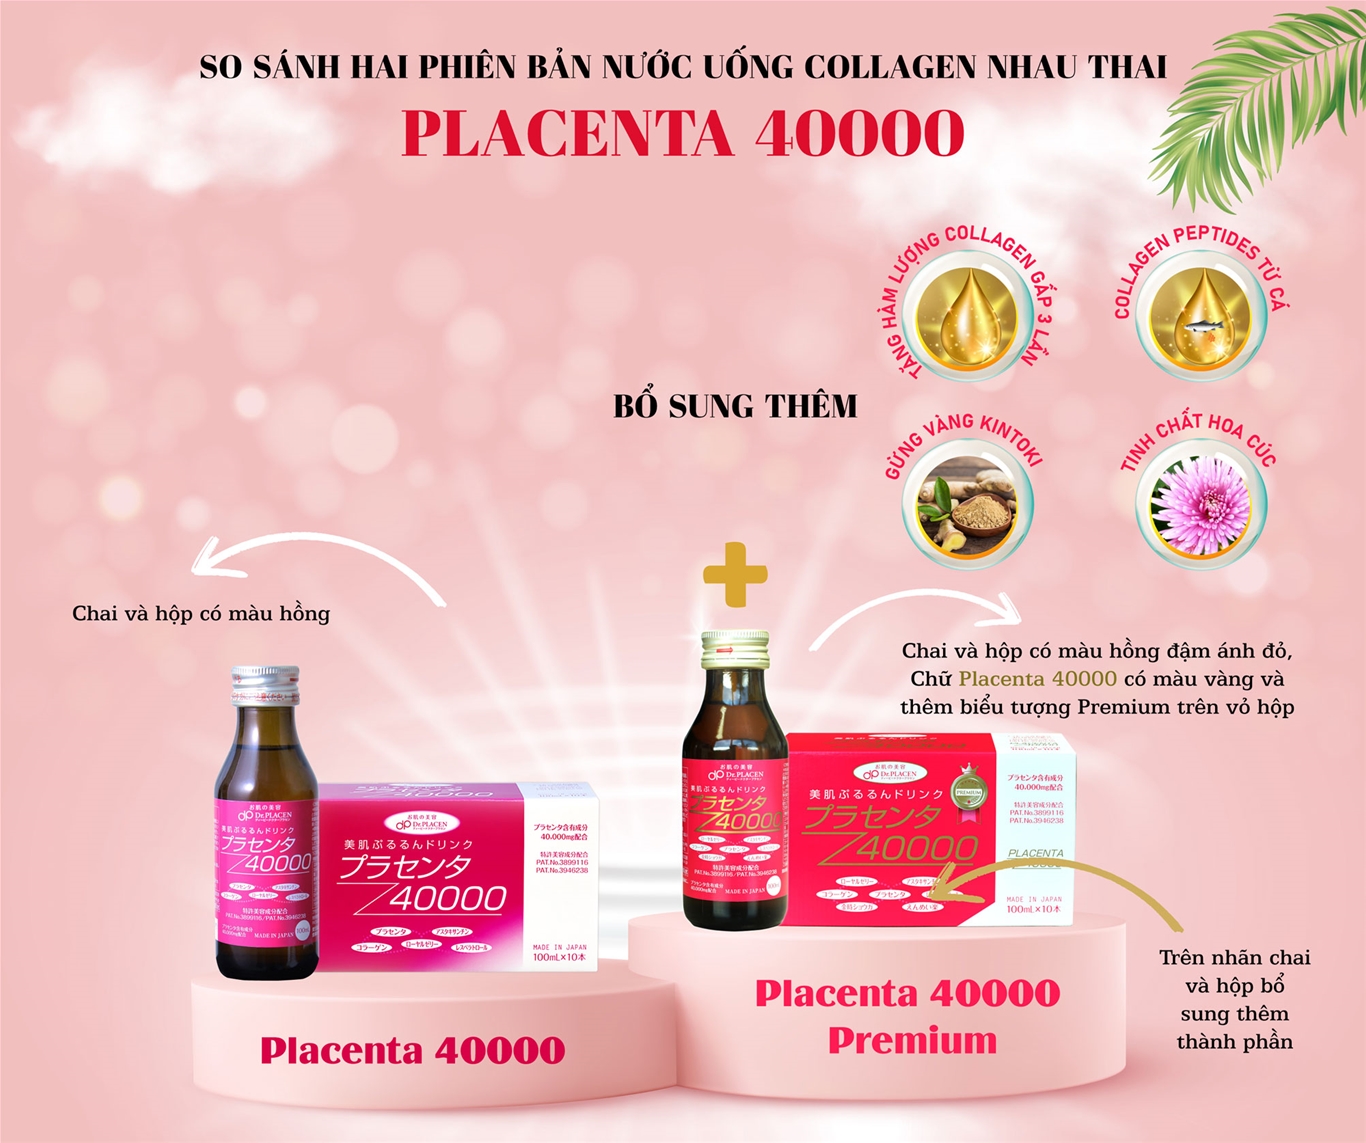 So sánh hai phiên bản Placenta 40000 Nhật Bản